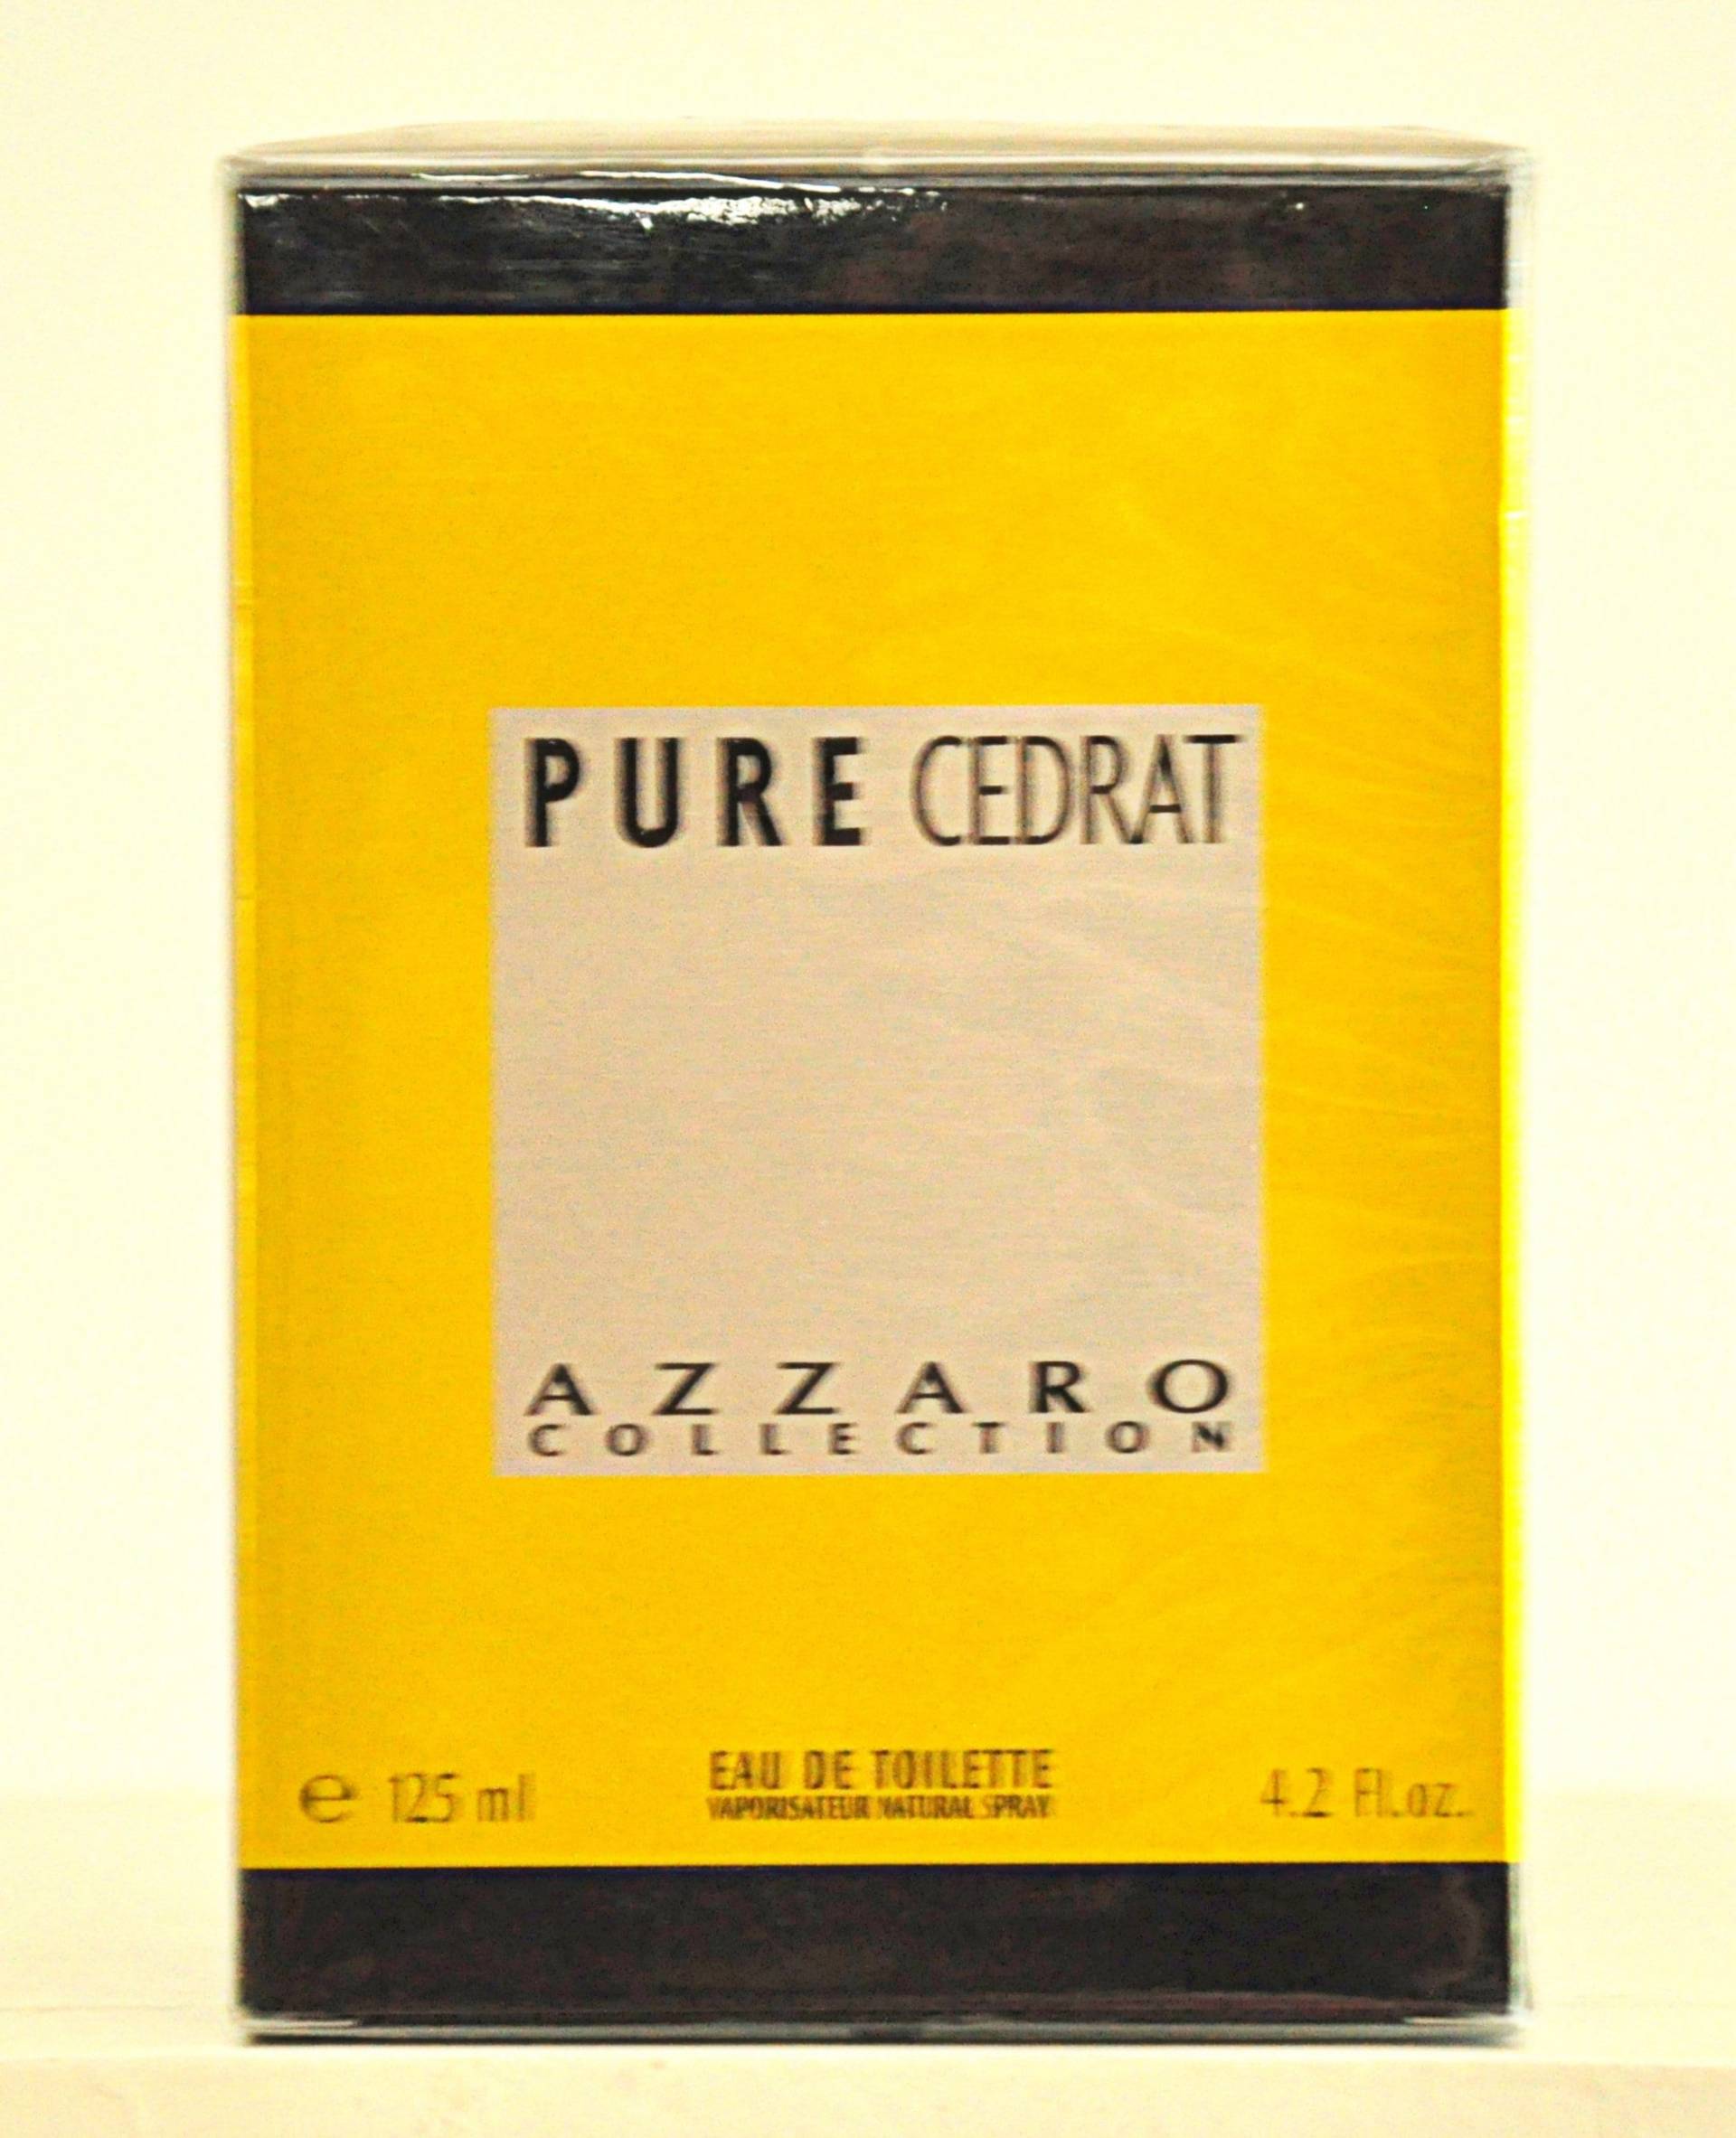 Azzaro Pure Cedrat Eau De Toilette Edt 125Ml Spray Parfüm Mann Rare Vintage Neu Versiegelt von YourVintagePerfume